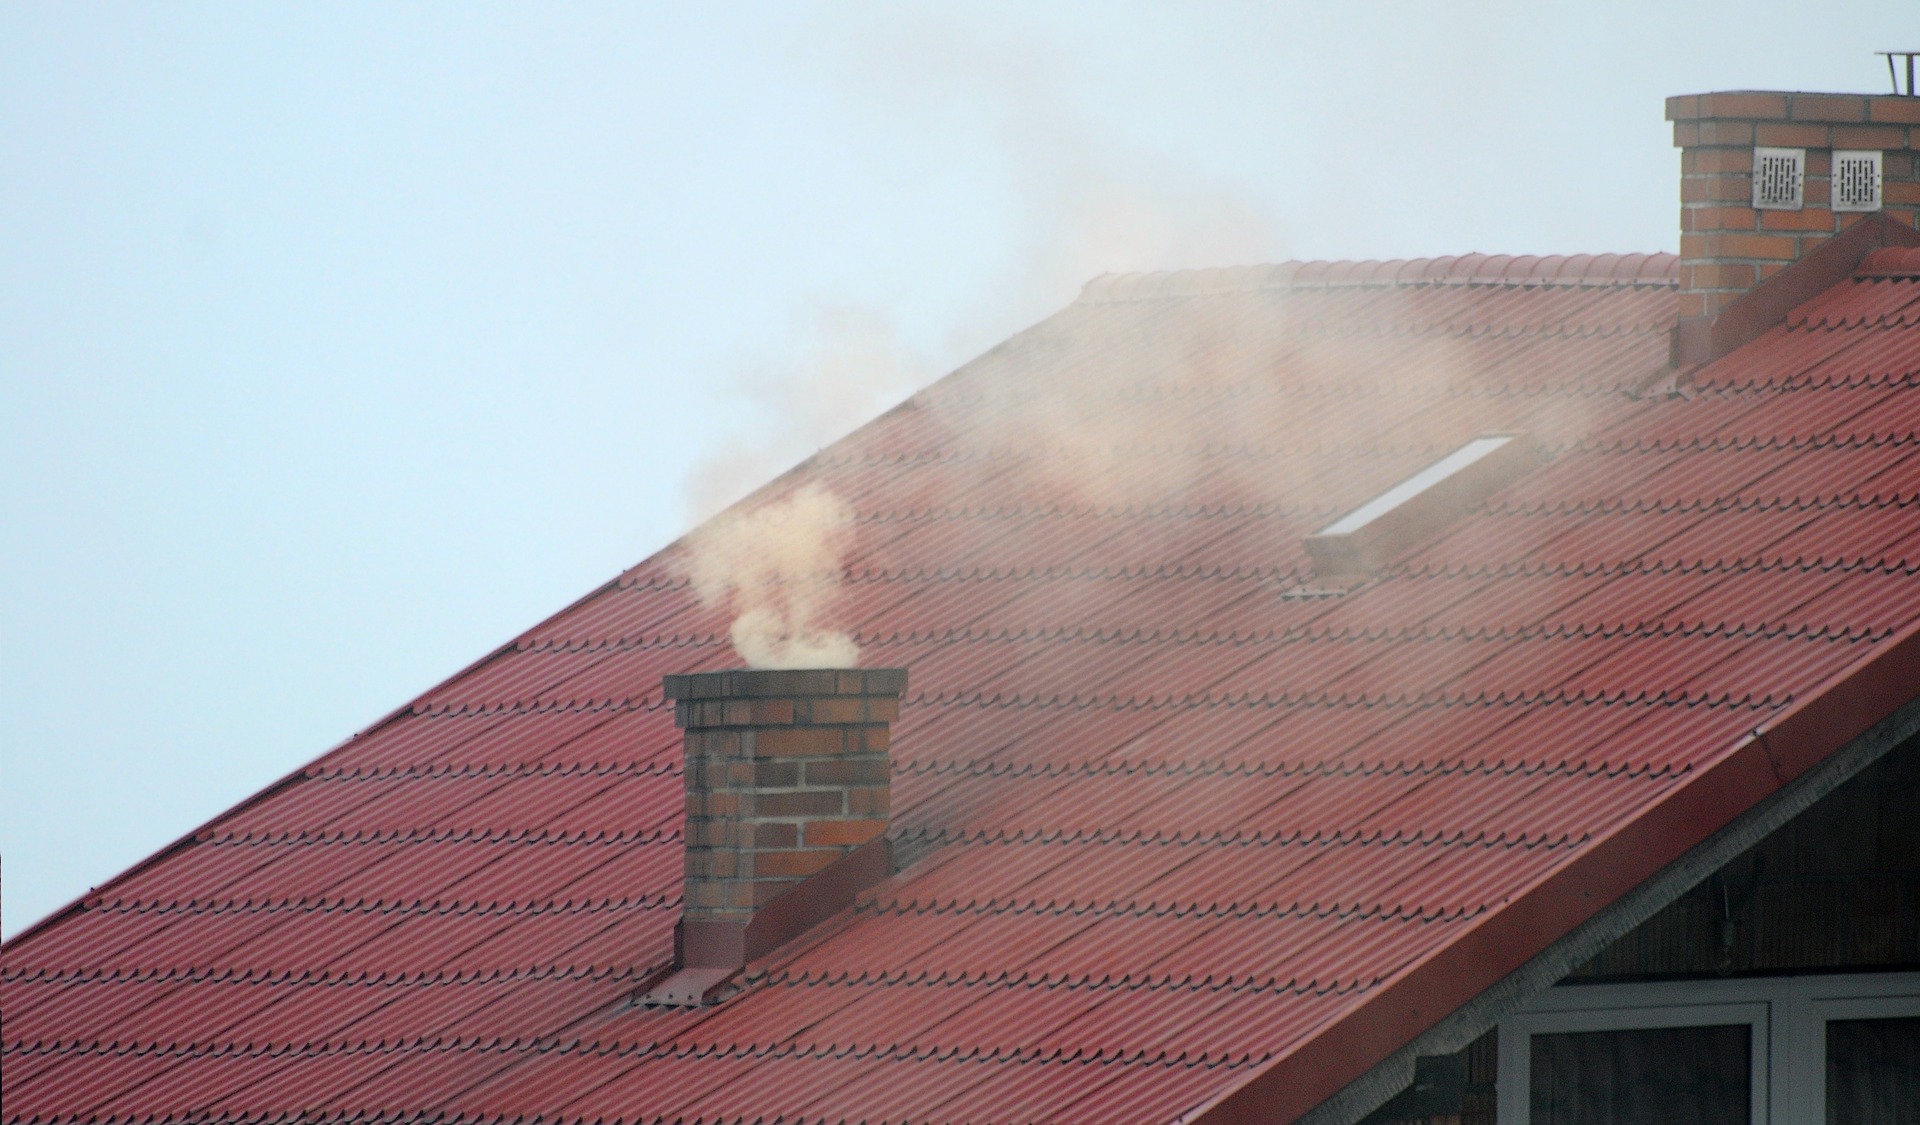 Zdjęcie przedstawia czerwony dach z kominem. Z komina unosi się dym. - grafika artykułu